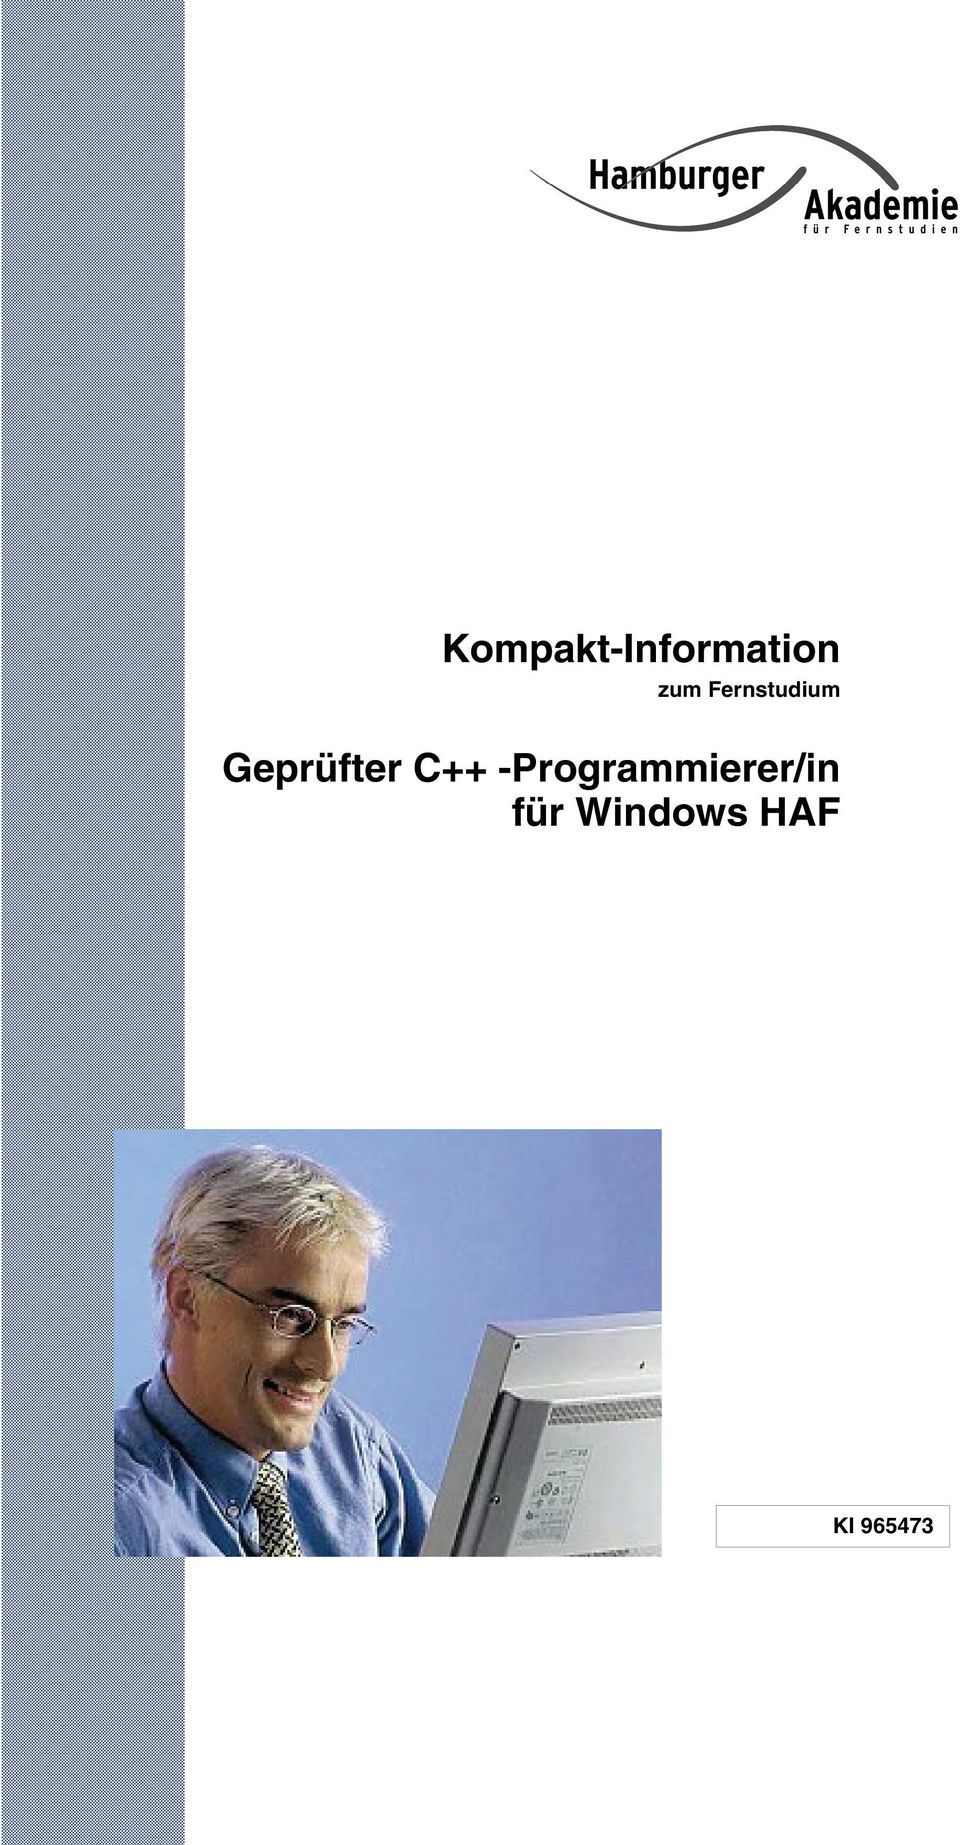 C++ -Programmierer/in